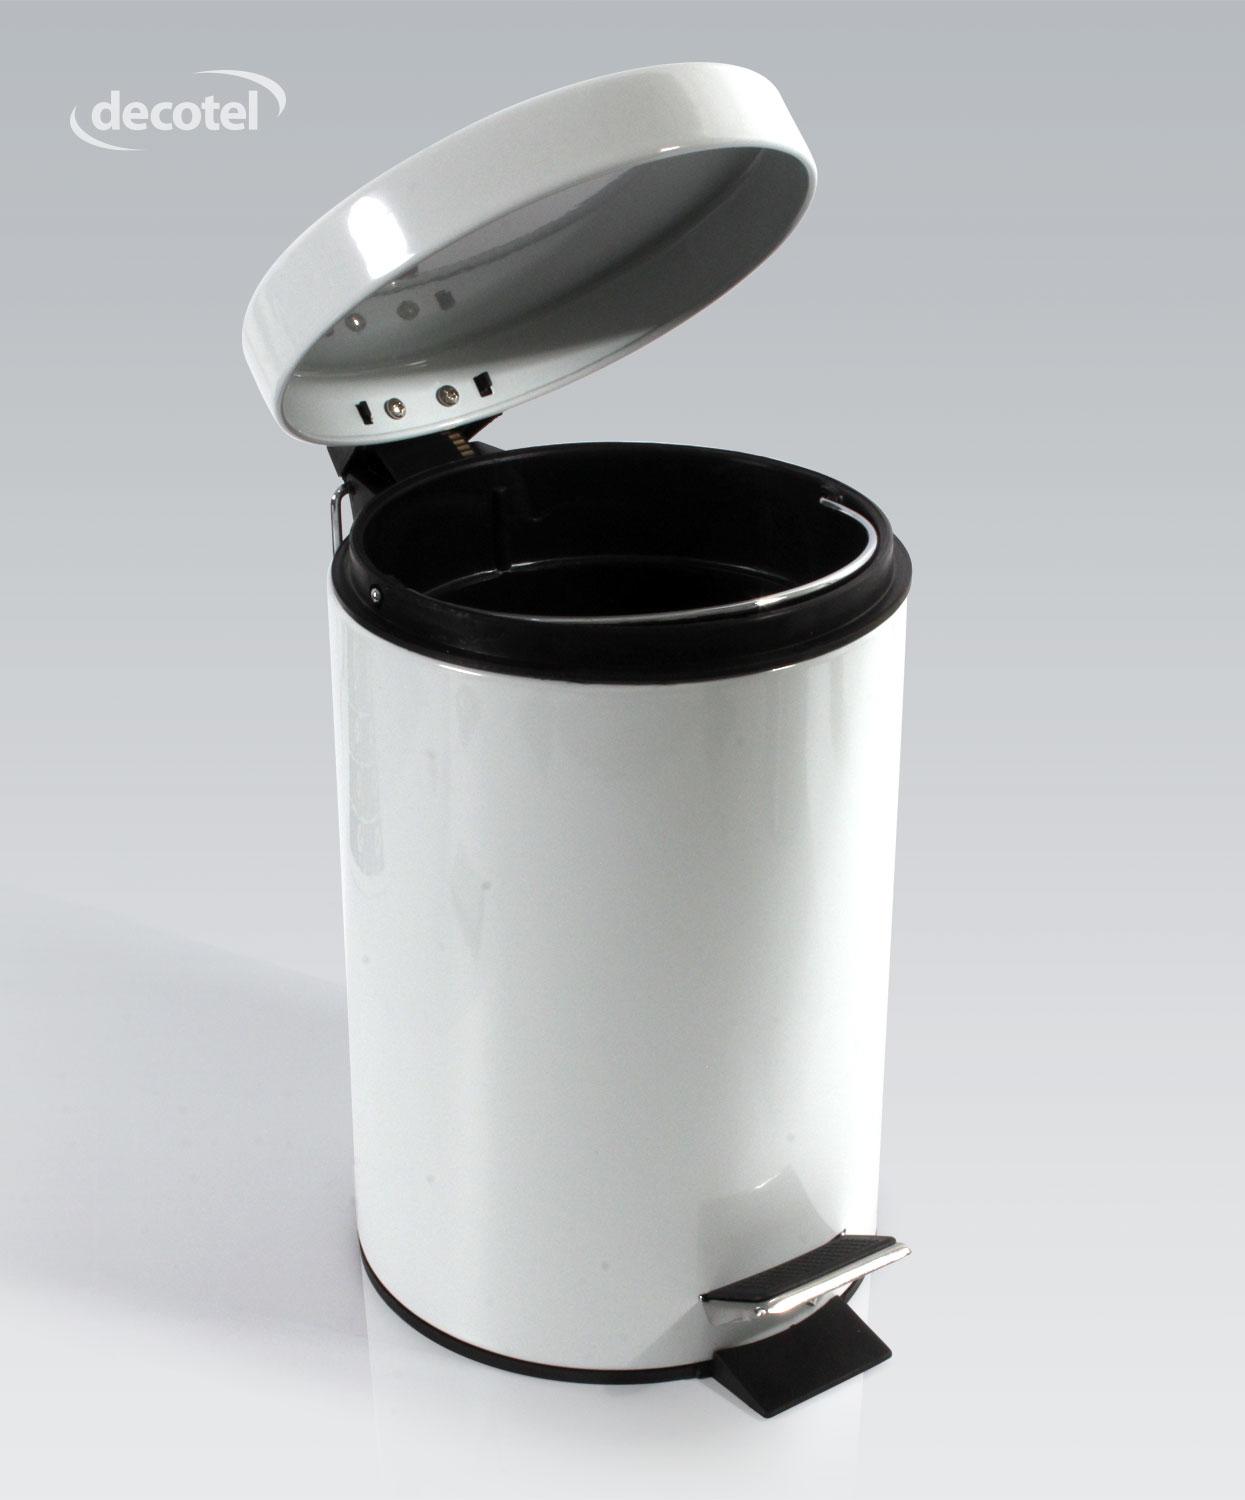 Gloss white 3 litre bathroom pedal bin